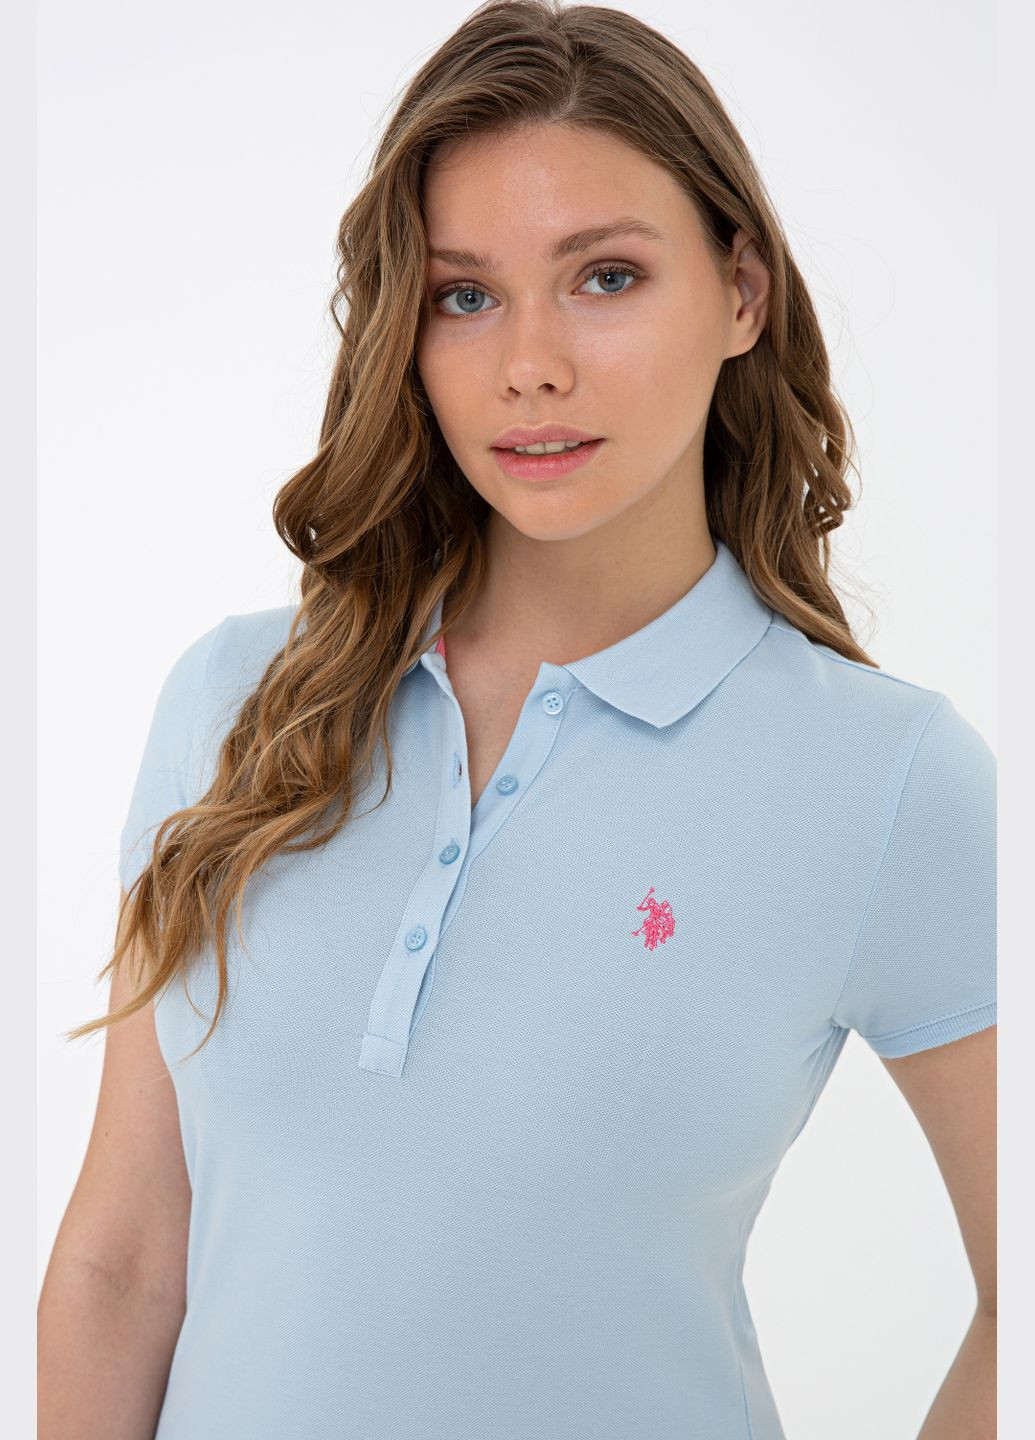 Голубая футболка u.s.polo assn женская U.S. Polo Assn.